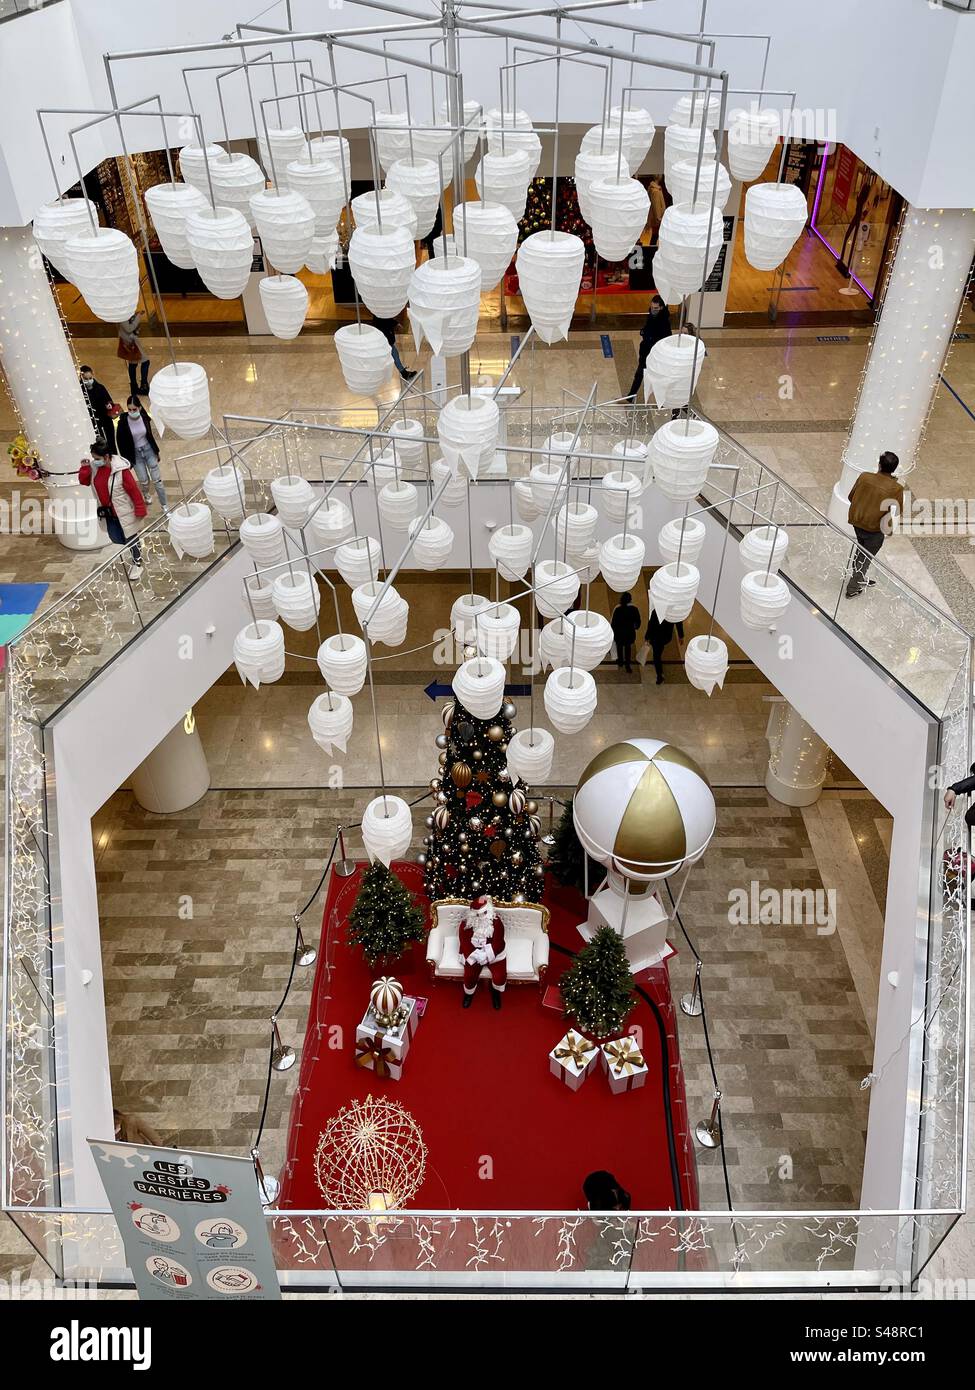 Innenaufnahme eines Einkaufszentrums, der Weihnachtsmann, der auf seinem Thron sitzt, umgeben von Weihnachtsschmuck und weißen Deckenleuchten während der Weihnachtszeit und COVID-Epidemien Stockfoto